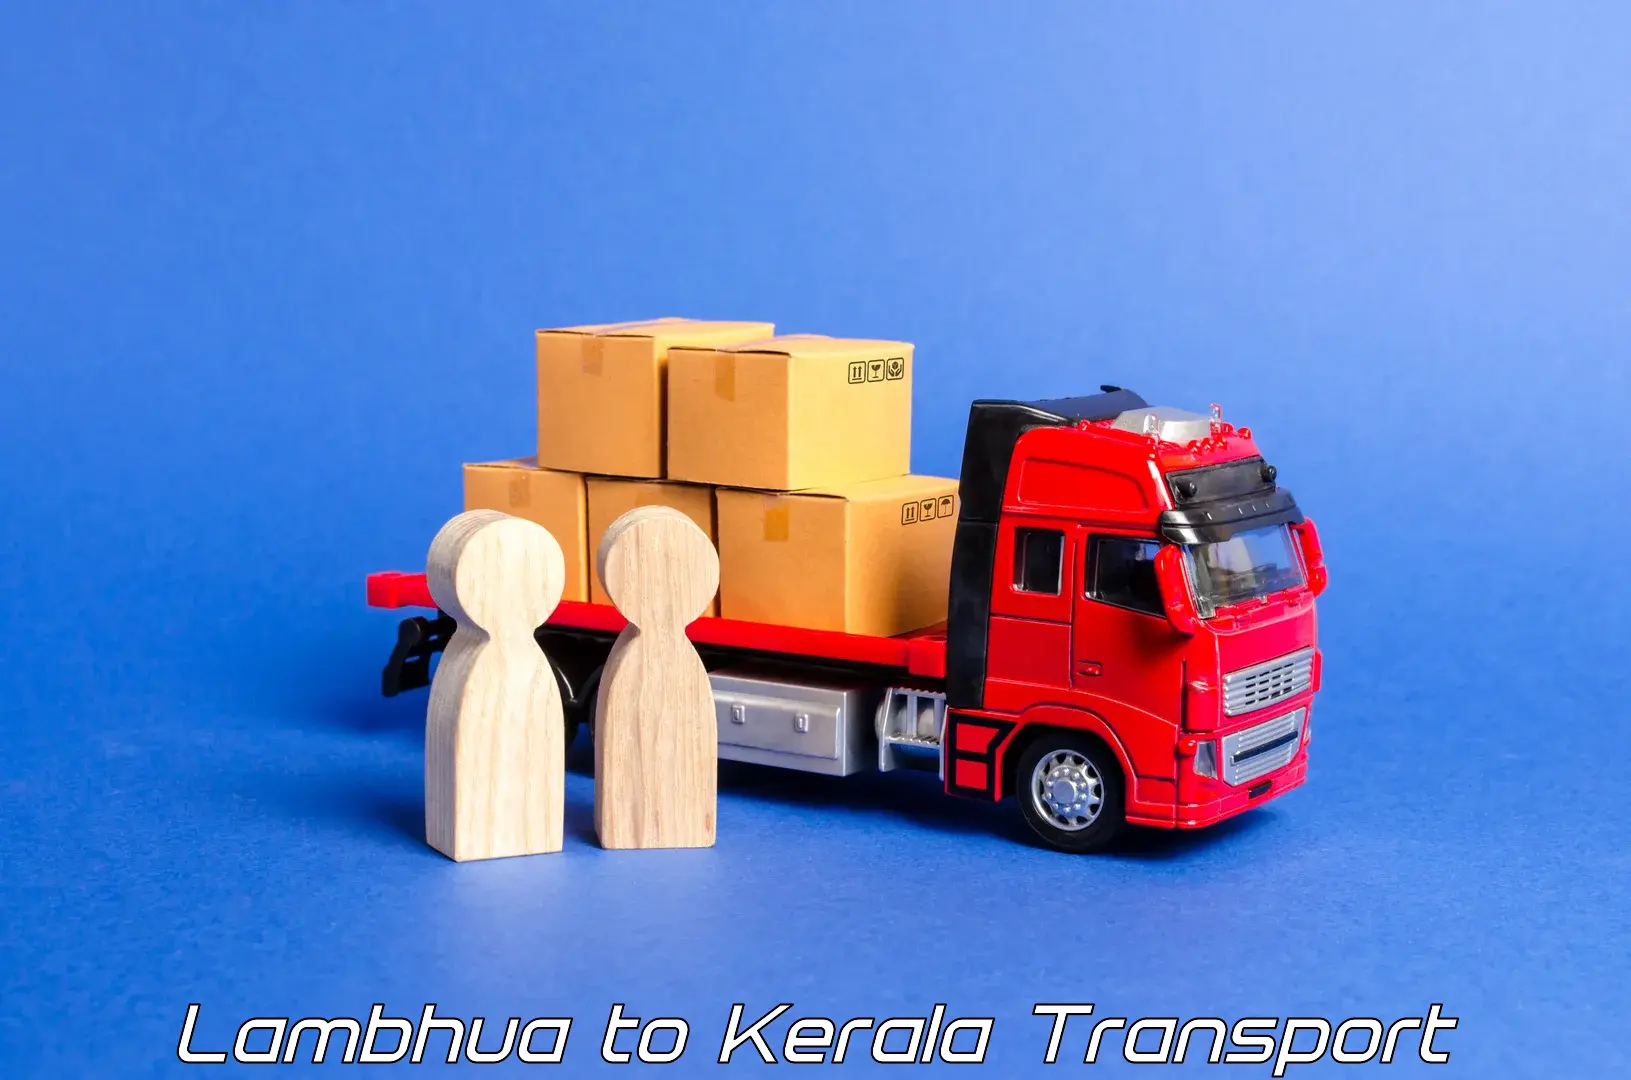 Nearest transport service Lambhua to Kothamangalam